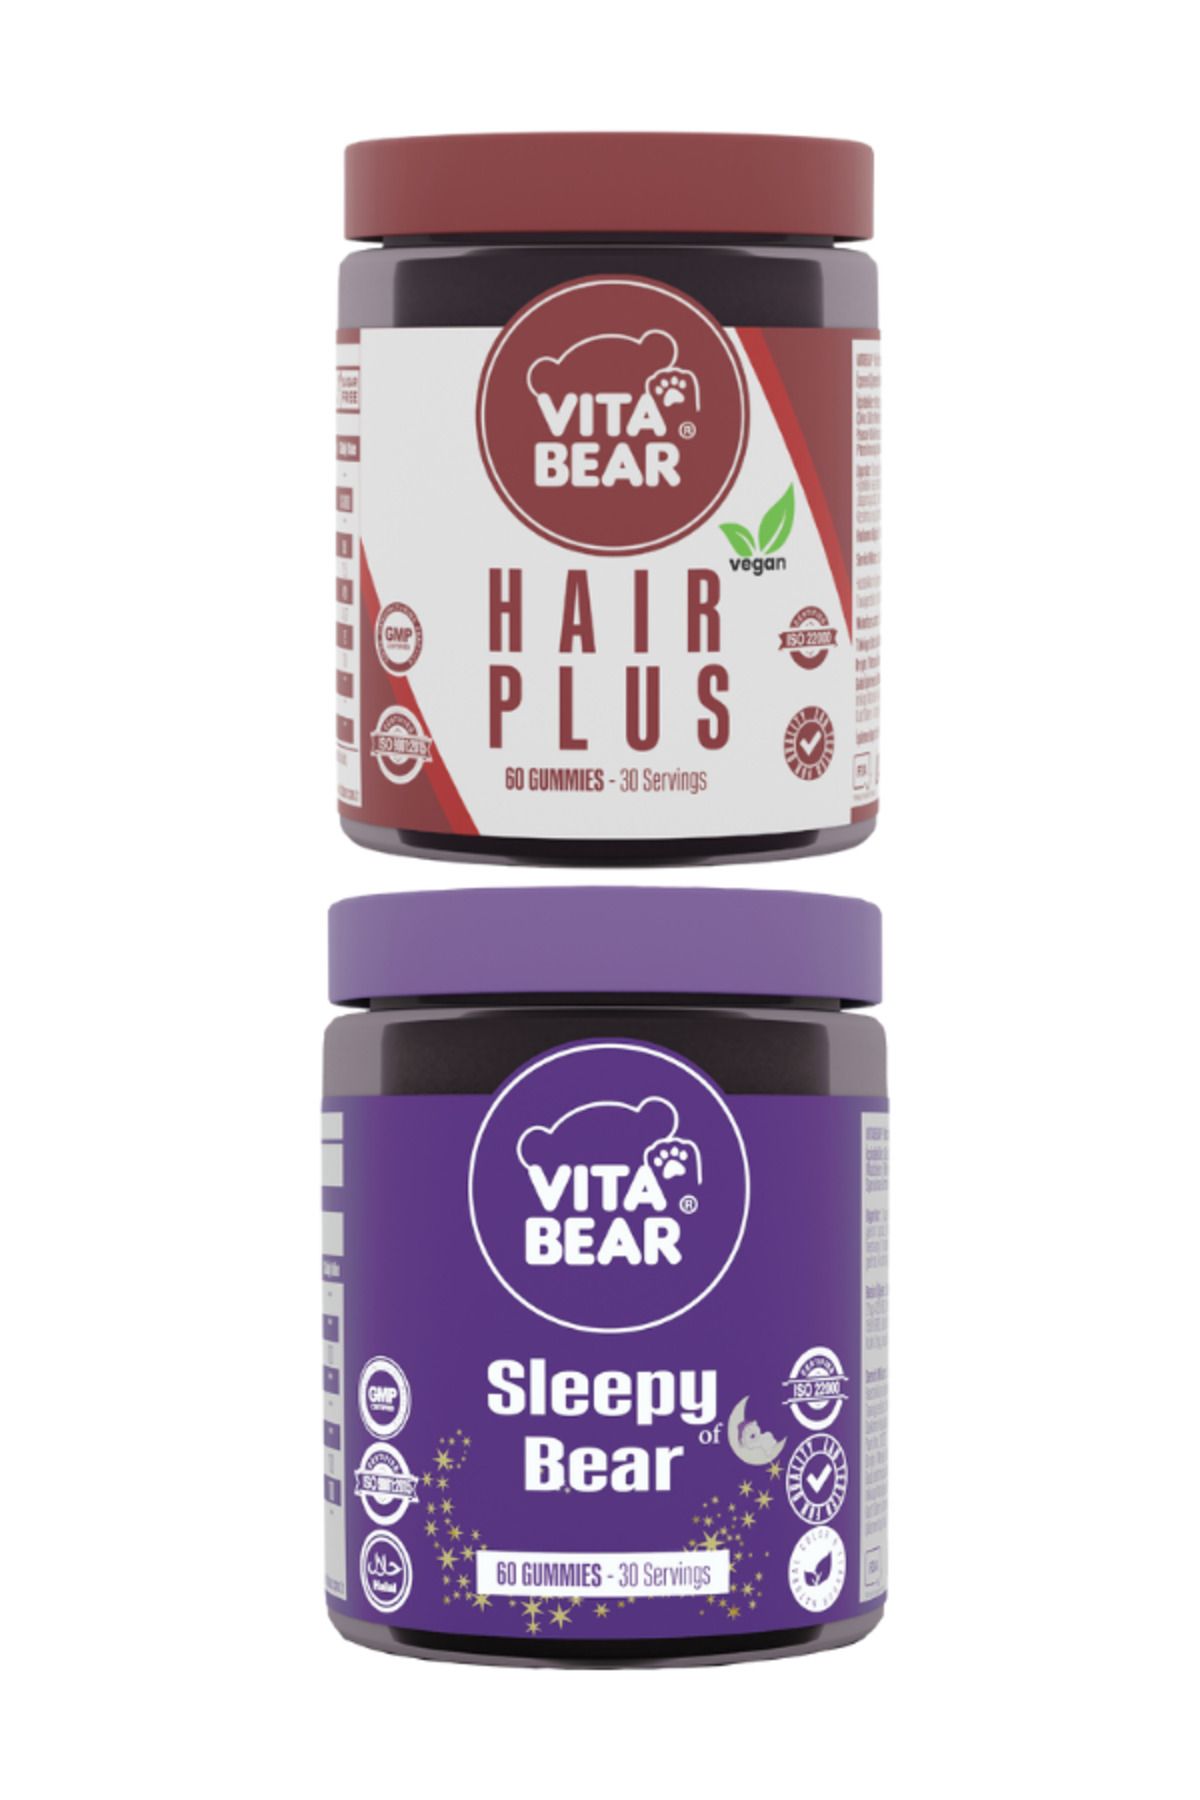 Vita Bear Hair Plus Vegan Saç Vitamini & Vita Bear sleepy